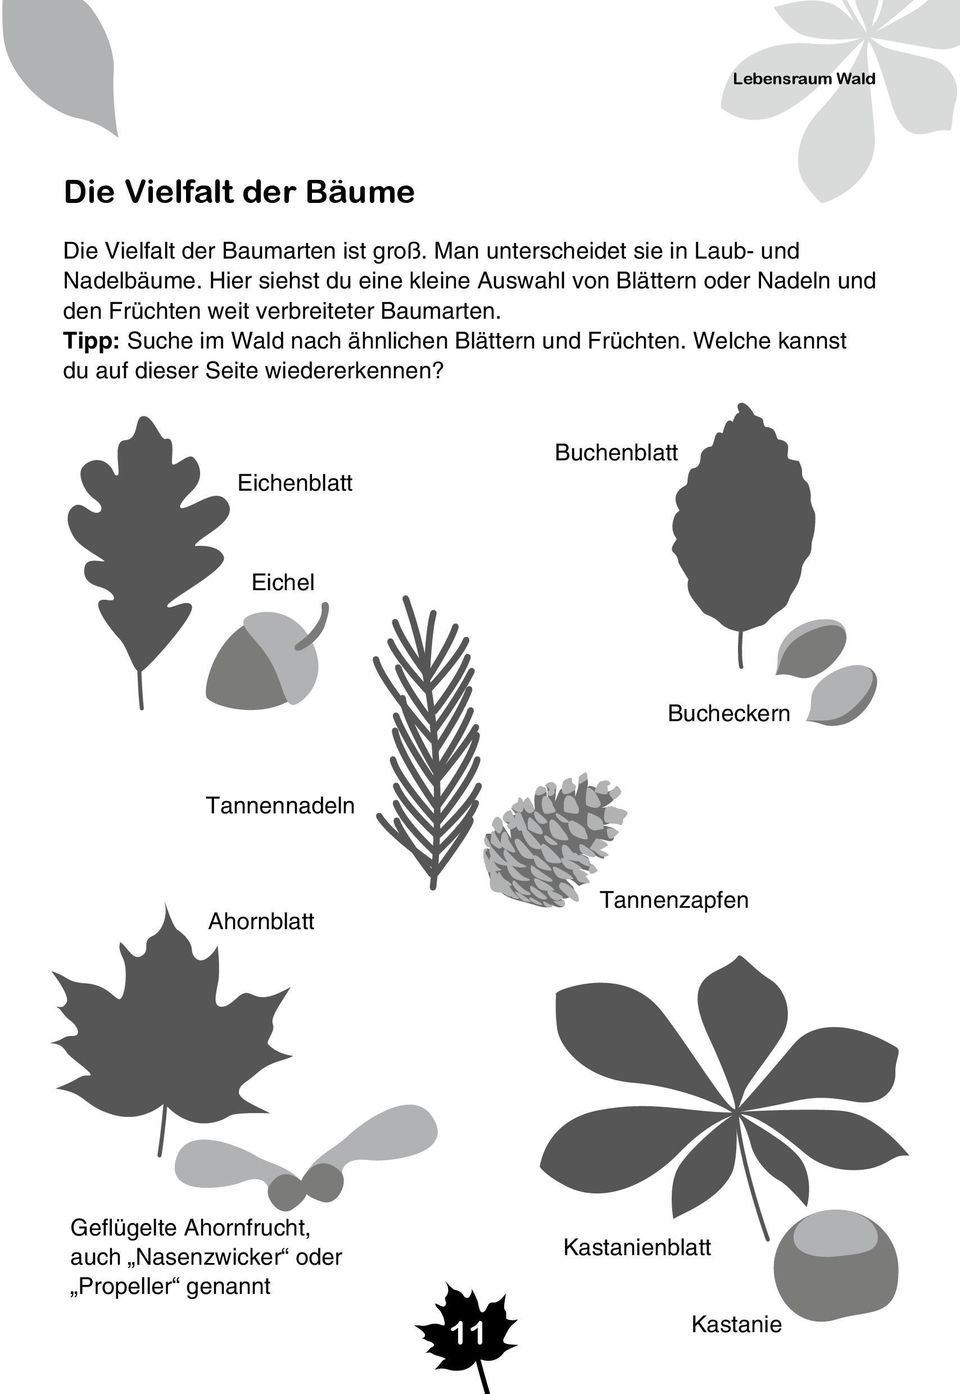 Tipp: Suche im Wald nach ähnlichen Blättern und Früchten. Welche kannst du auf dieser Seite wiedererkennen?